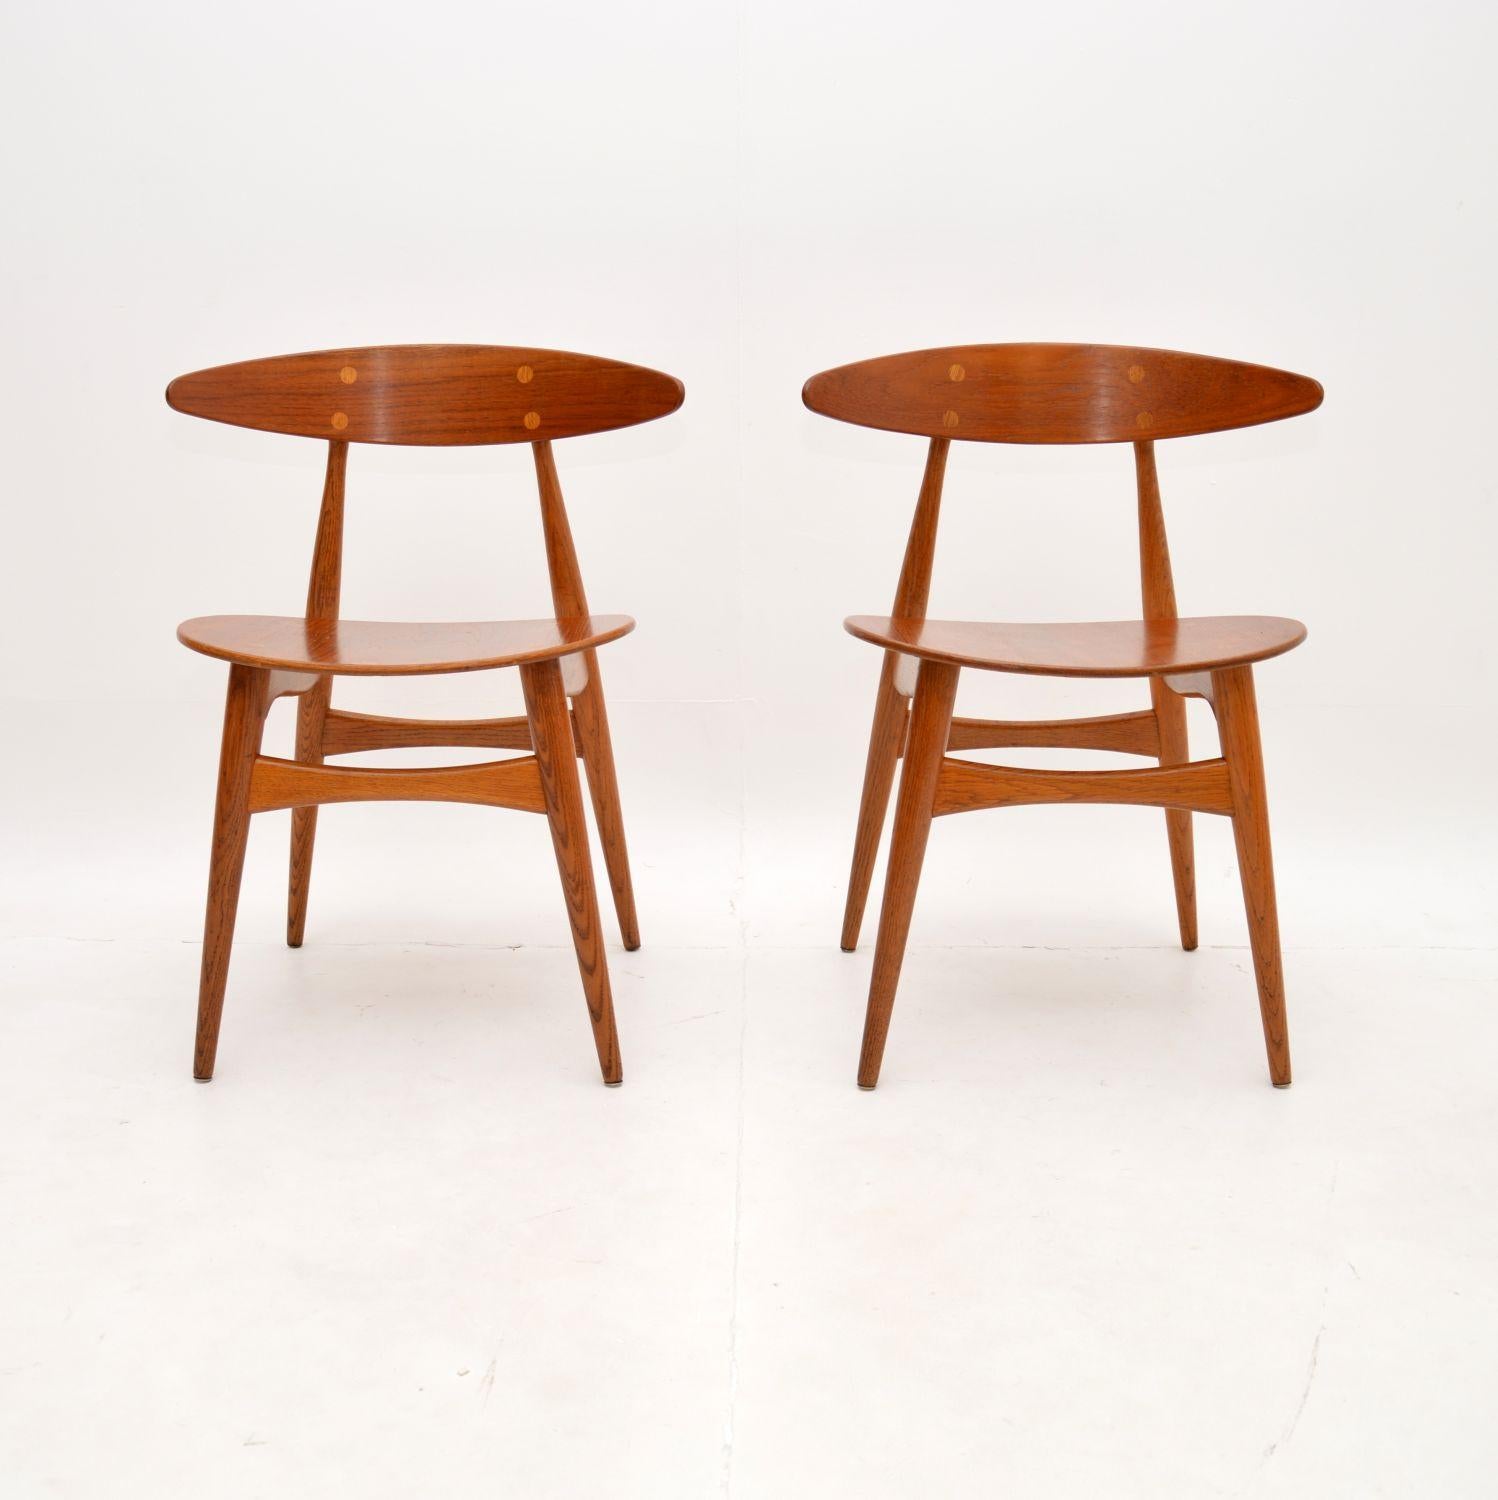 Superbe paire de chaises danoises CH33 de Hans Wegner pour Carl Hansen & Son. Il s'agit de modèles vintage originaux datant des années 1960.

La qualité est exceptionnelle, ils sont magnifiquement fabriqués avec des cadres en chêne massif, les